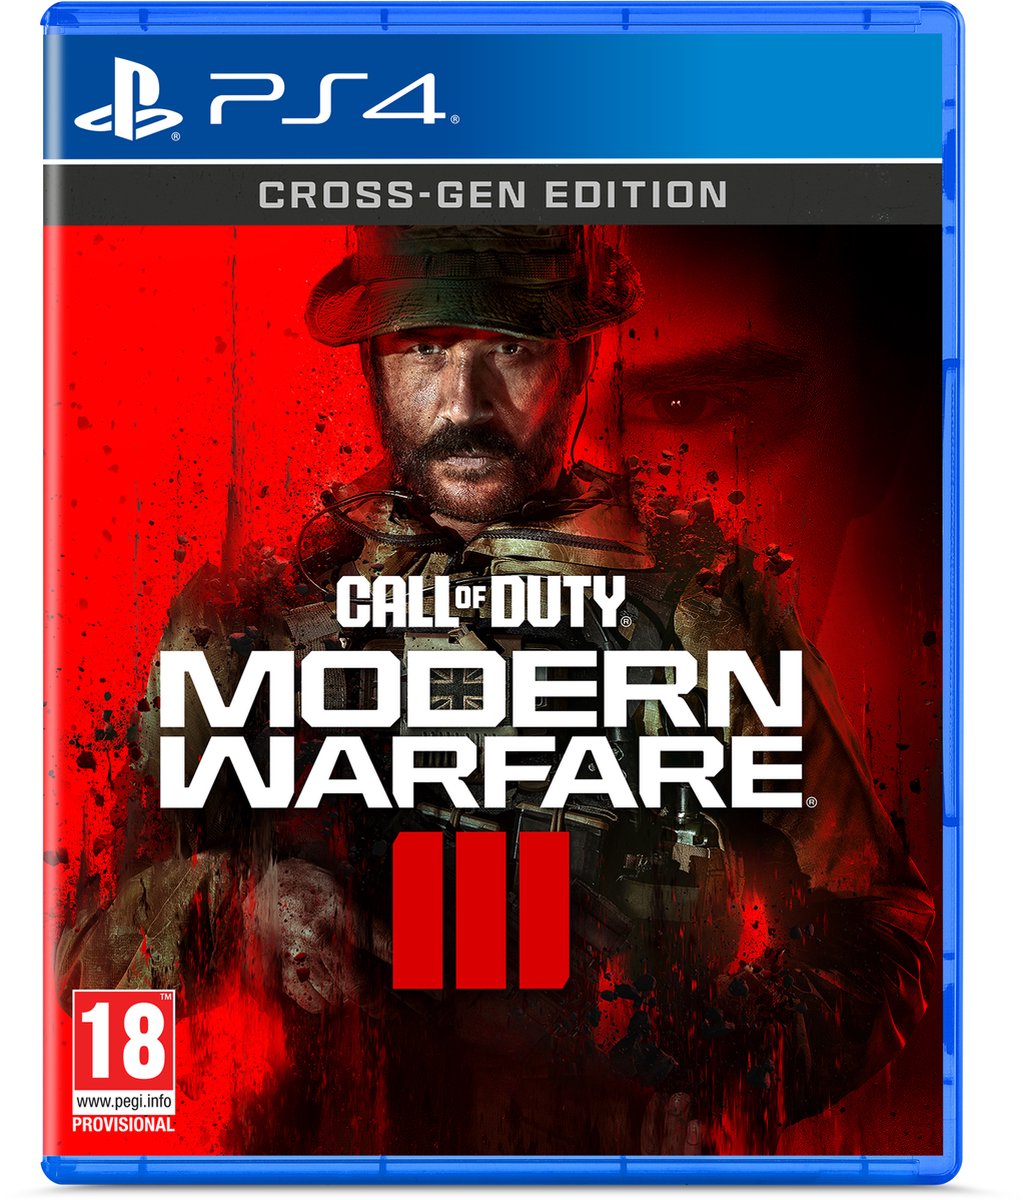 Call of Duty: Modern Warfare III (PS4), Infinity Ward 